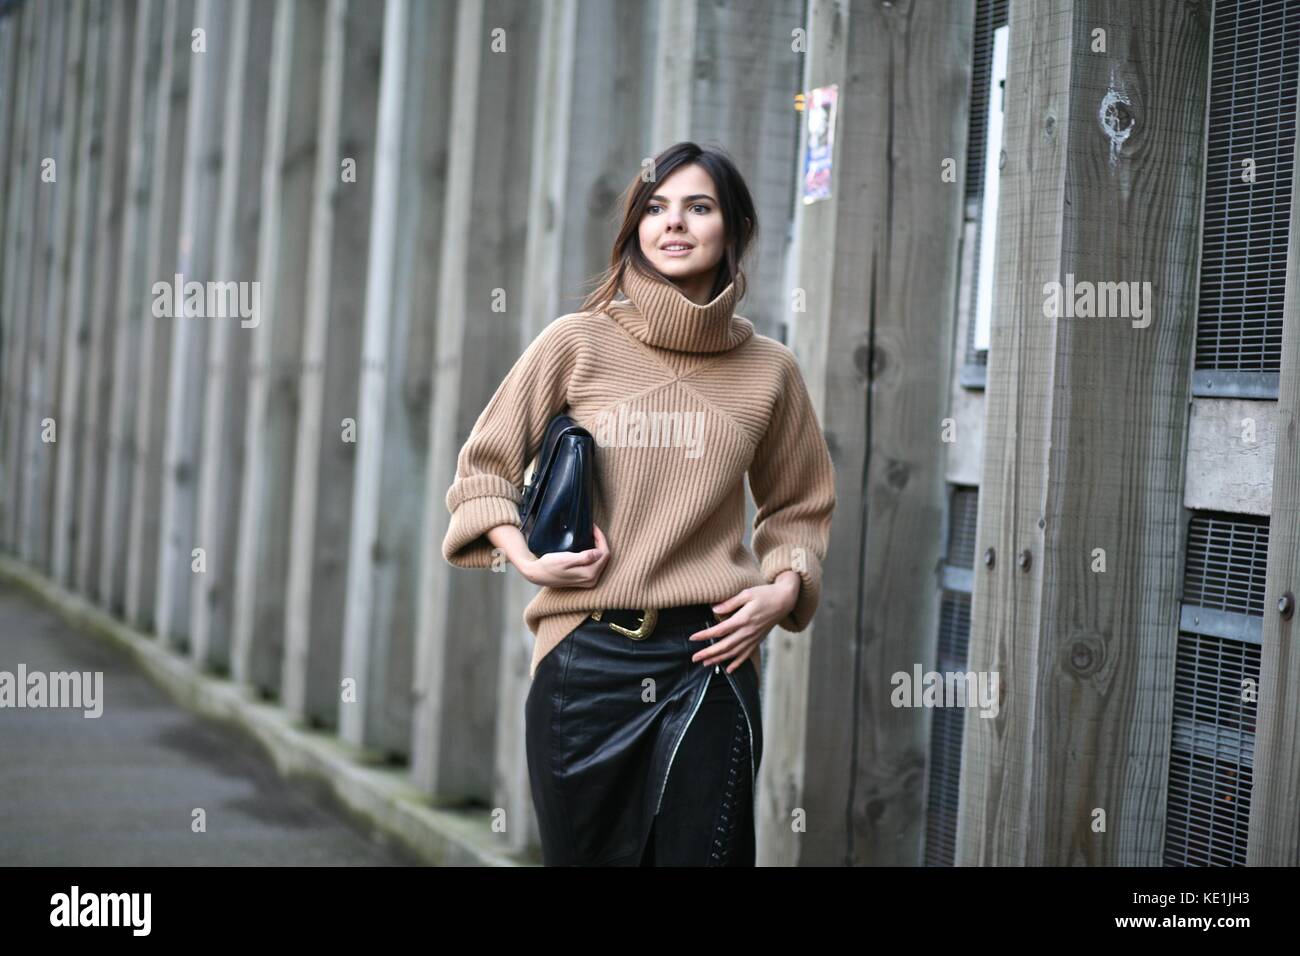 Doina ciobanu lors de la London fashion week automne hiver 2016 22 feb 2016 : london uk street style ? Banque D'Images